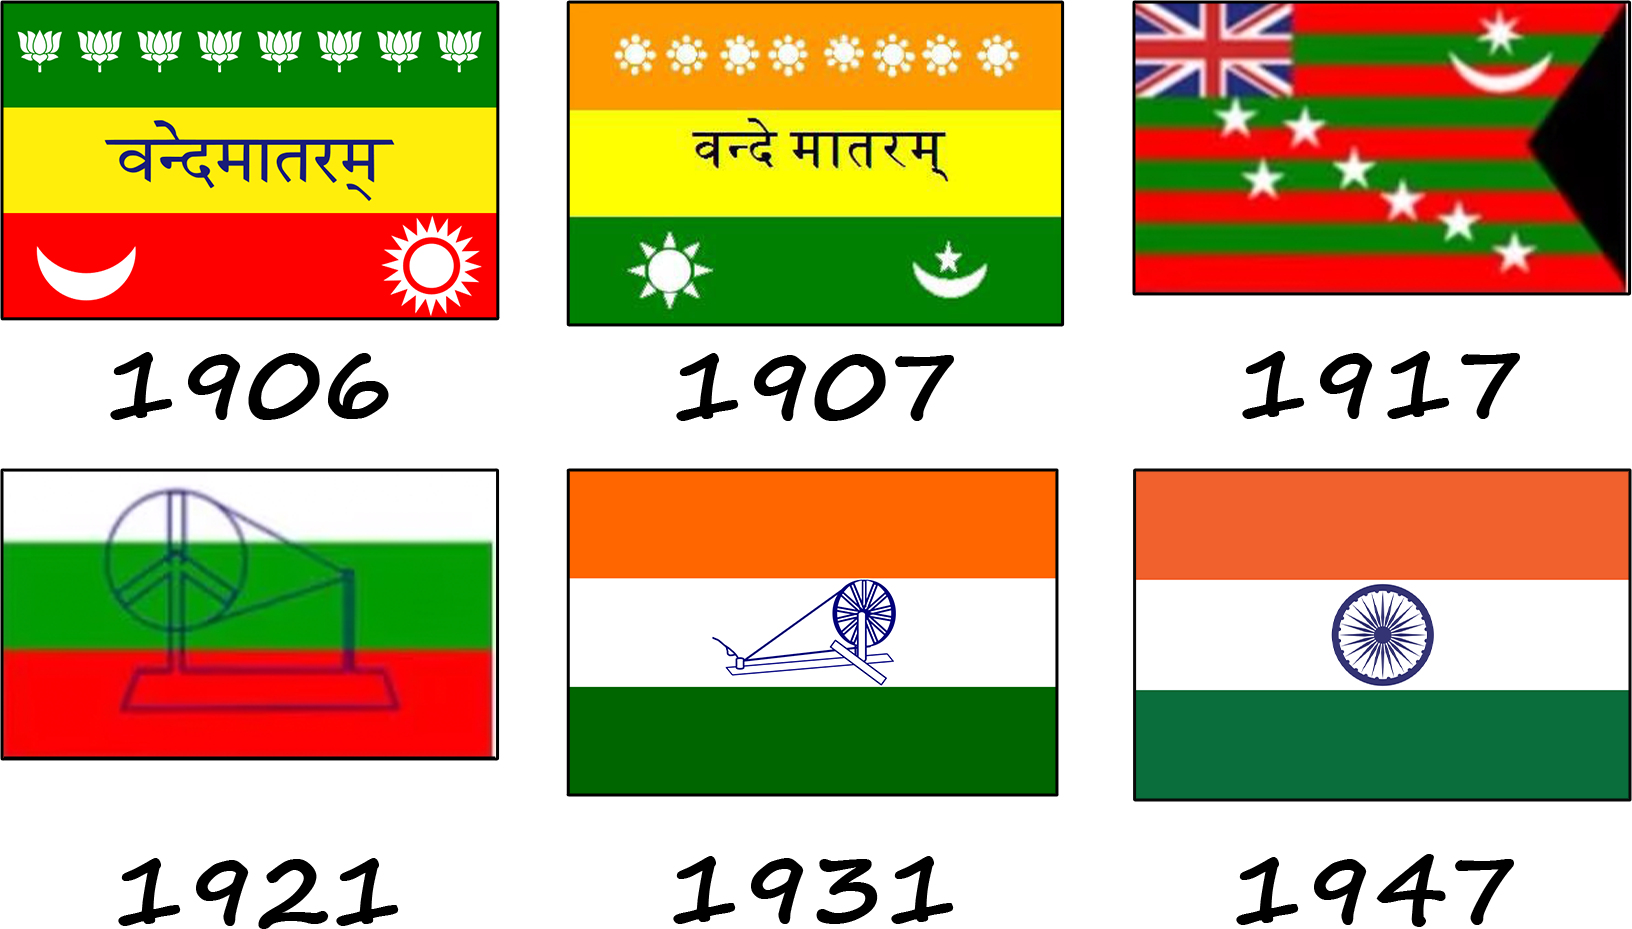 Як змінювався прапор Індії? Історія індійського прапору